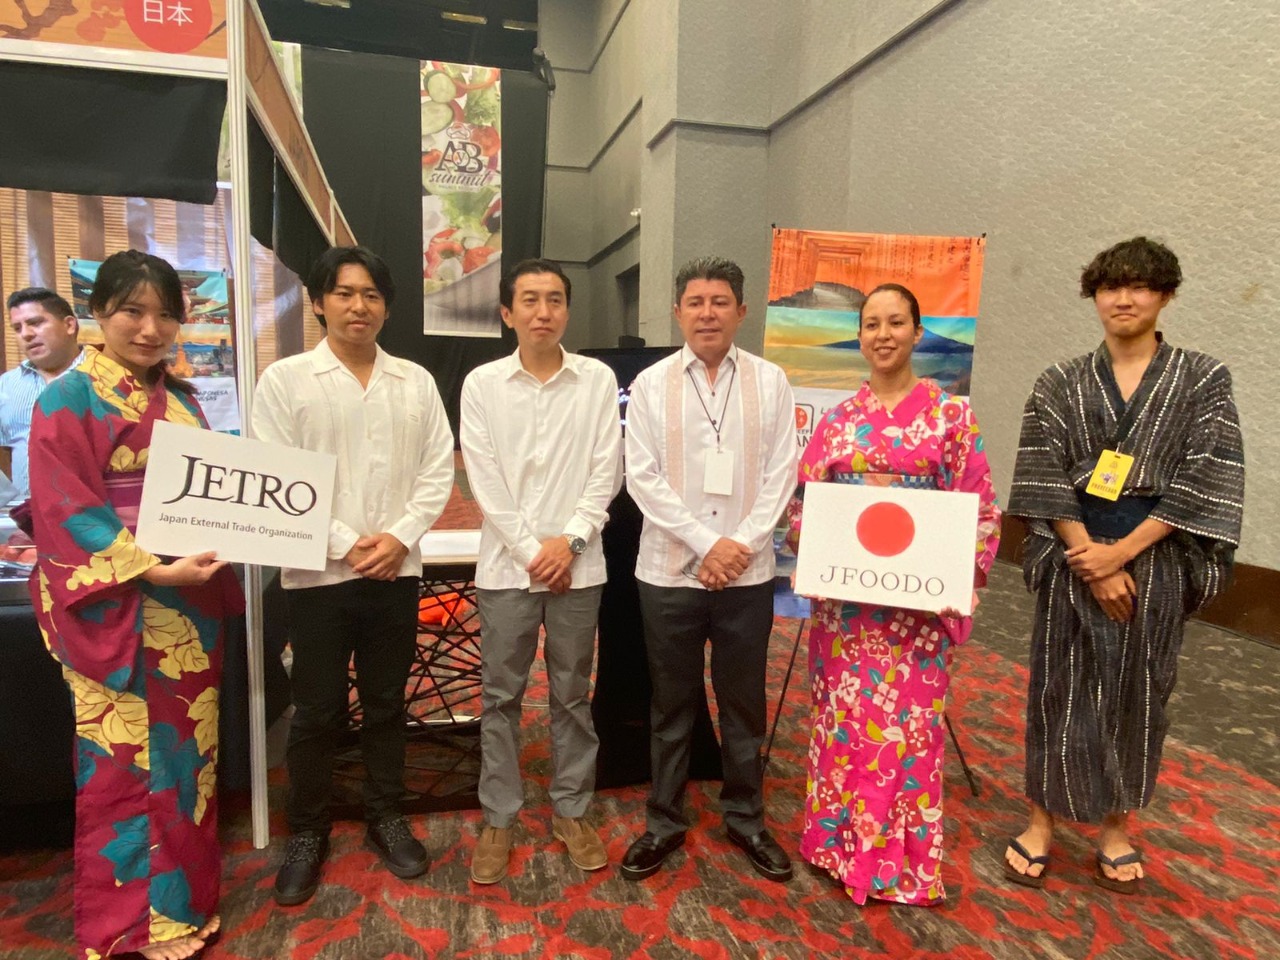 Promueven productos japoneses entre personal de hoteles en Cancún